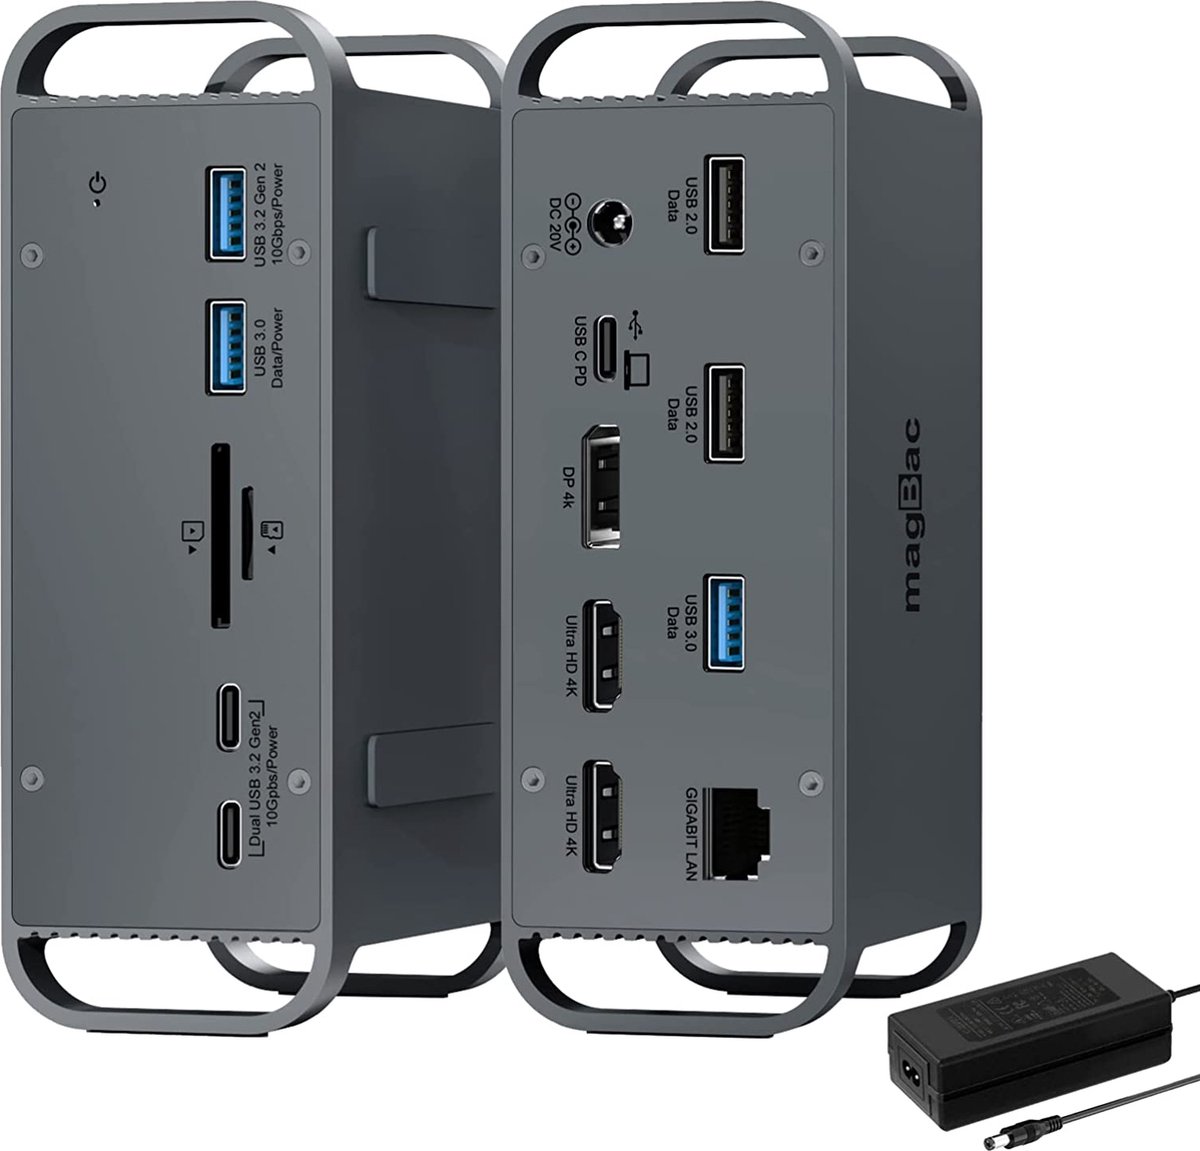 NÖRDIC DOCK-168 USB-C dockingstation - 2xHDMI, 1xDP 4K60Hz, 7xUSB, 1xUSB-C PD65W, 1xRJ45 1xSD, 1xMicro SD -Thunderbolt 3/4